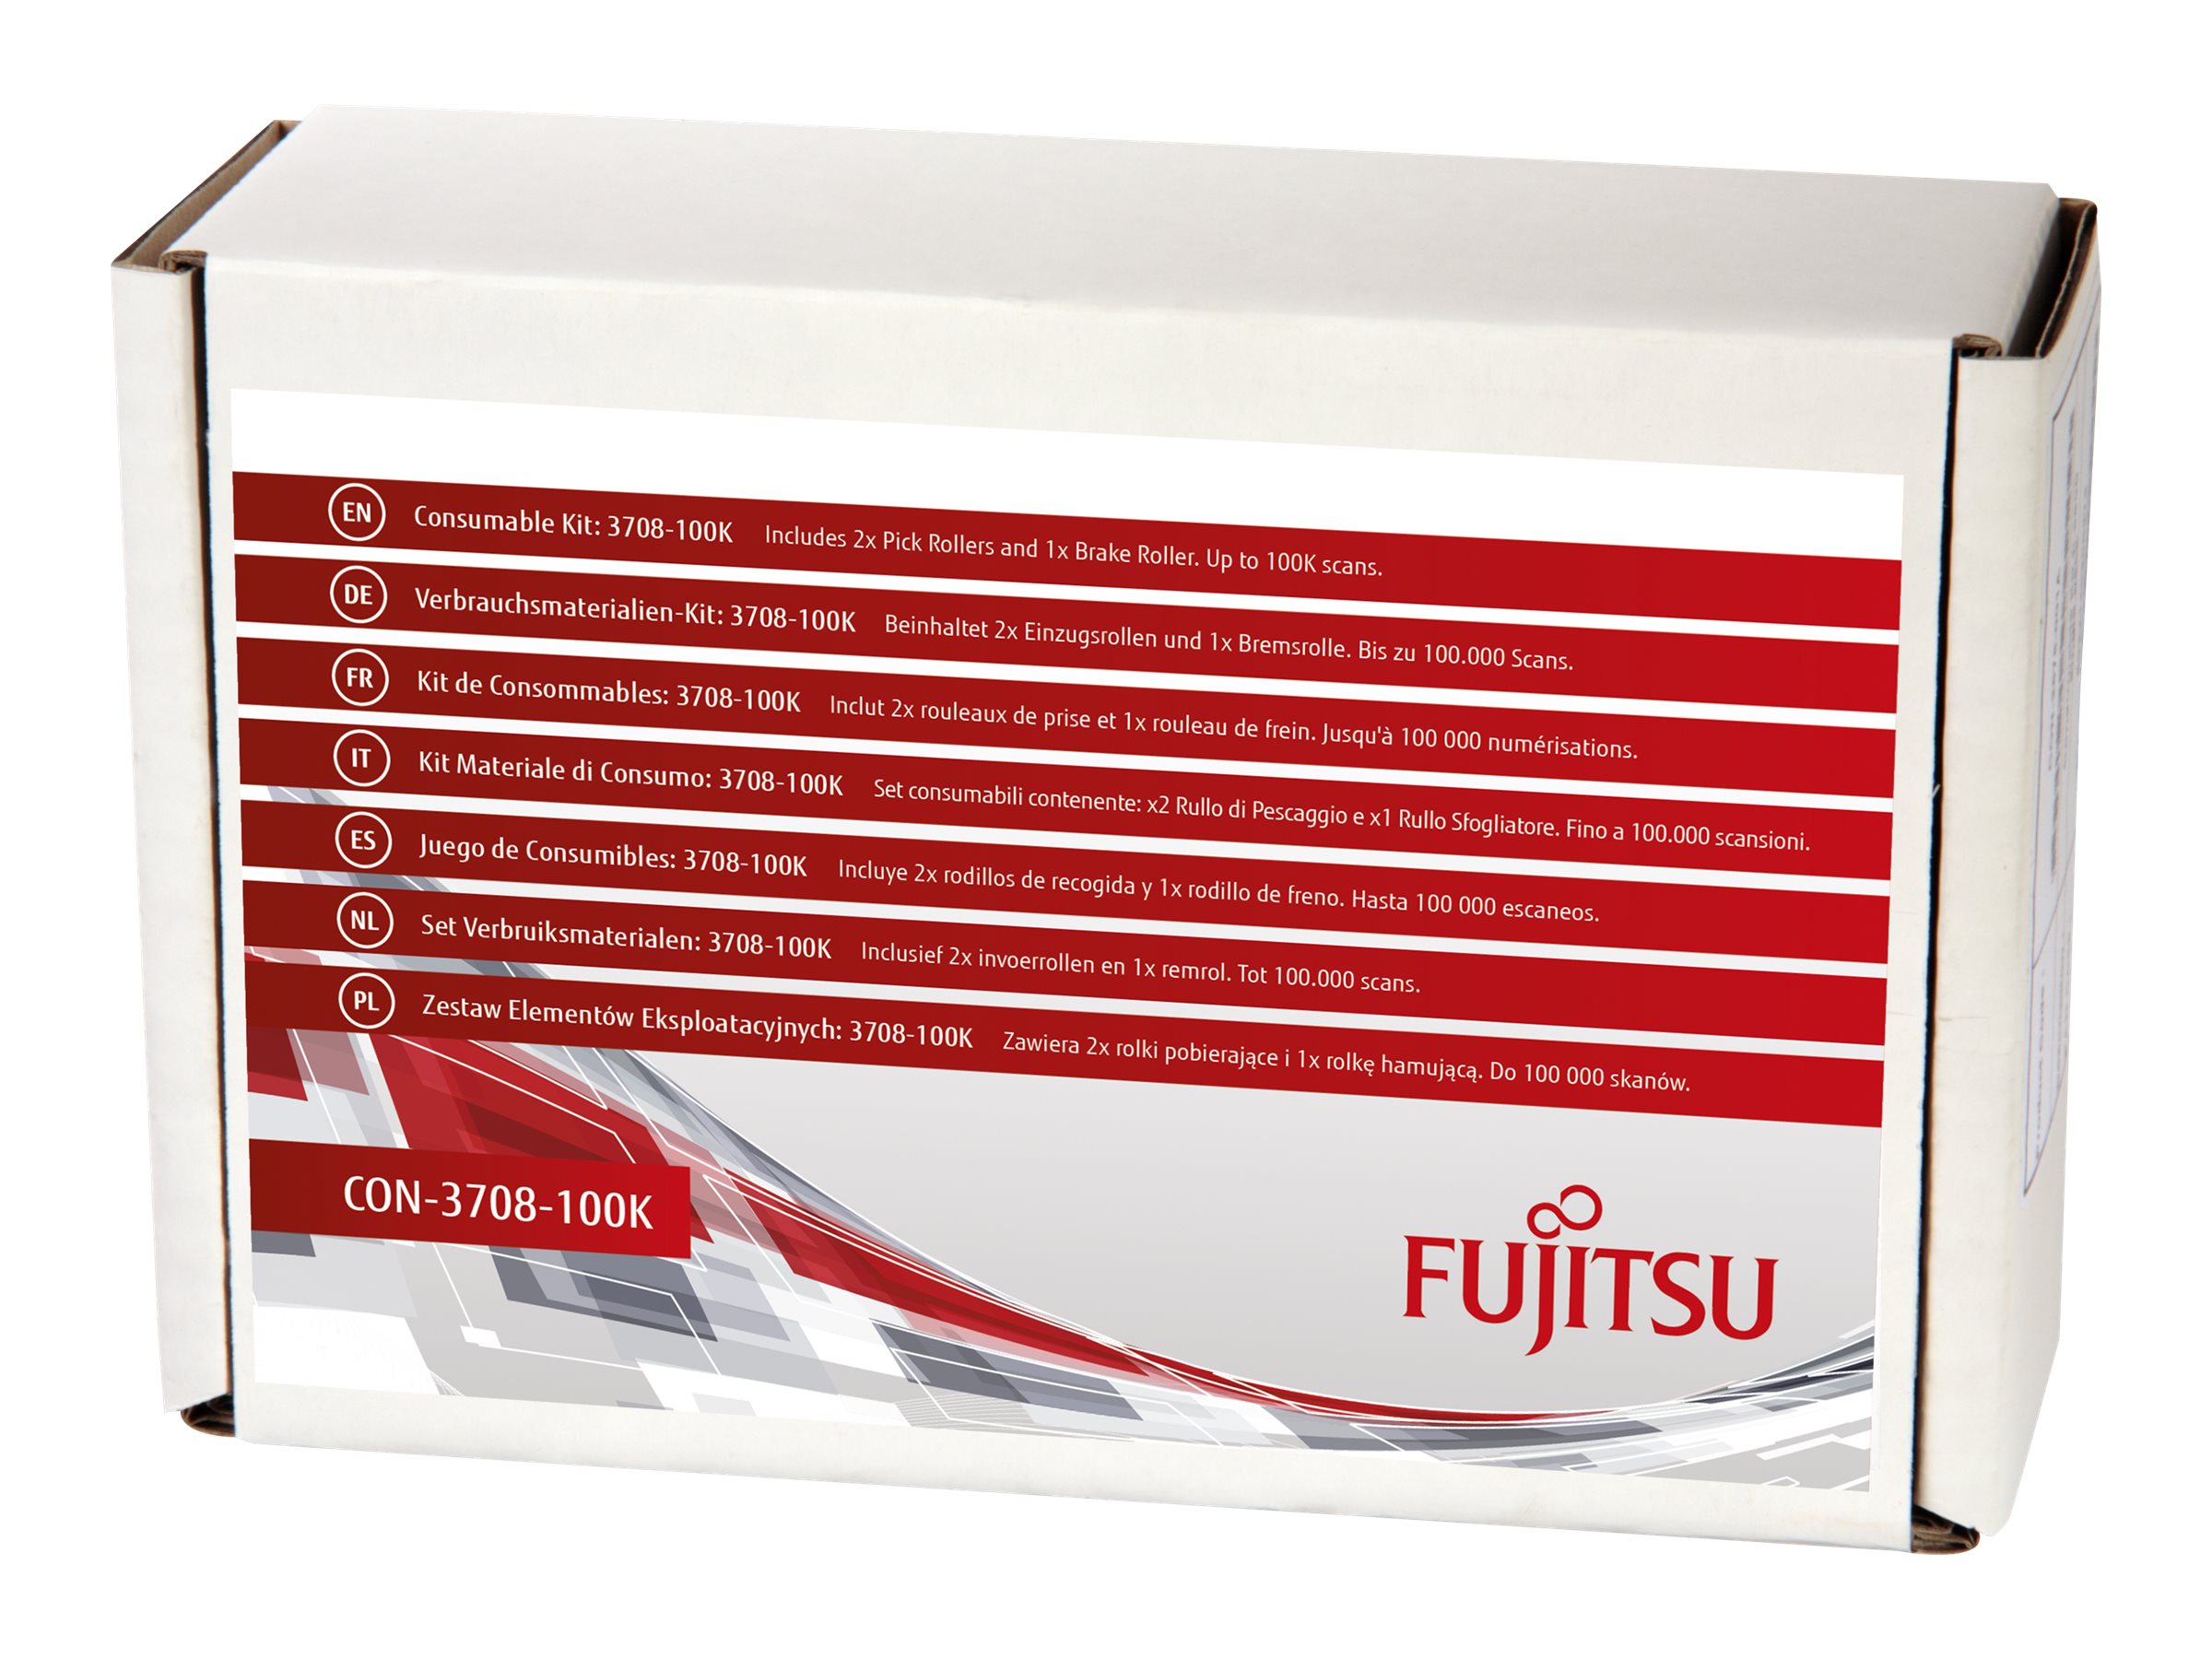 Fujitsu Consumable Kit: 3708-100K - Scanner - Verbrauchsmaterialienkit - für Fujitsu SP-1120, SP-1120N, SP-1125, SP-1125N, SP-1130, SP-1130N